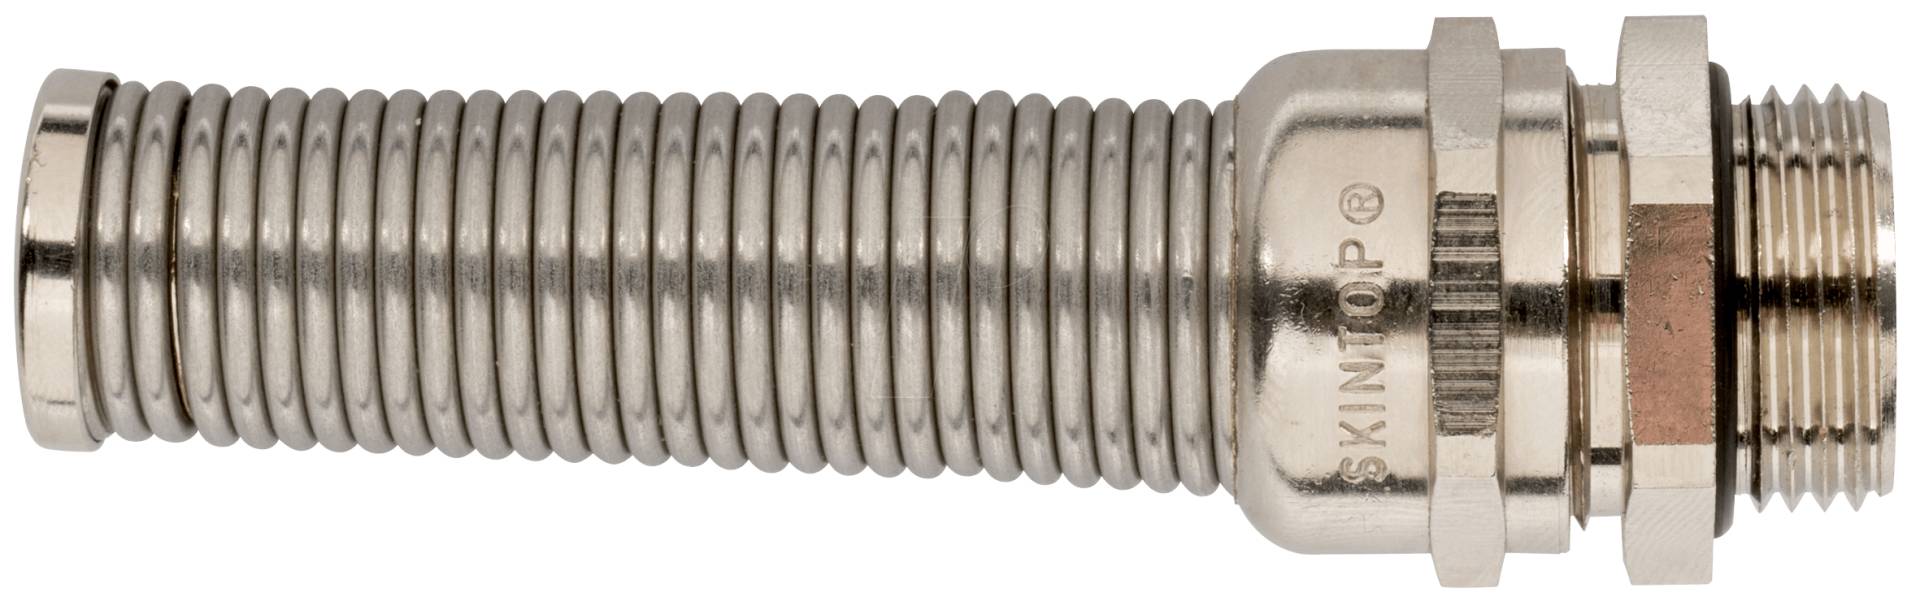 LAPP 53806761 - Kabelverschraubung, M 20 x 1,5, Ø 7 - 13 mm, silber, IP68 von LAPP